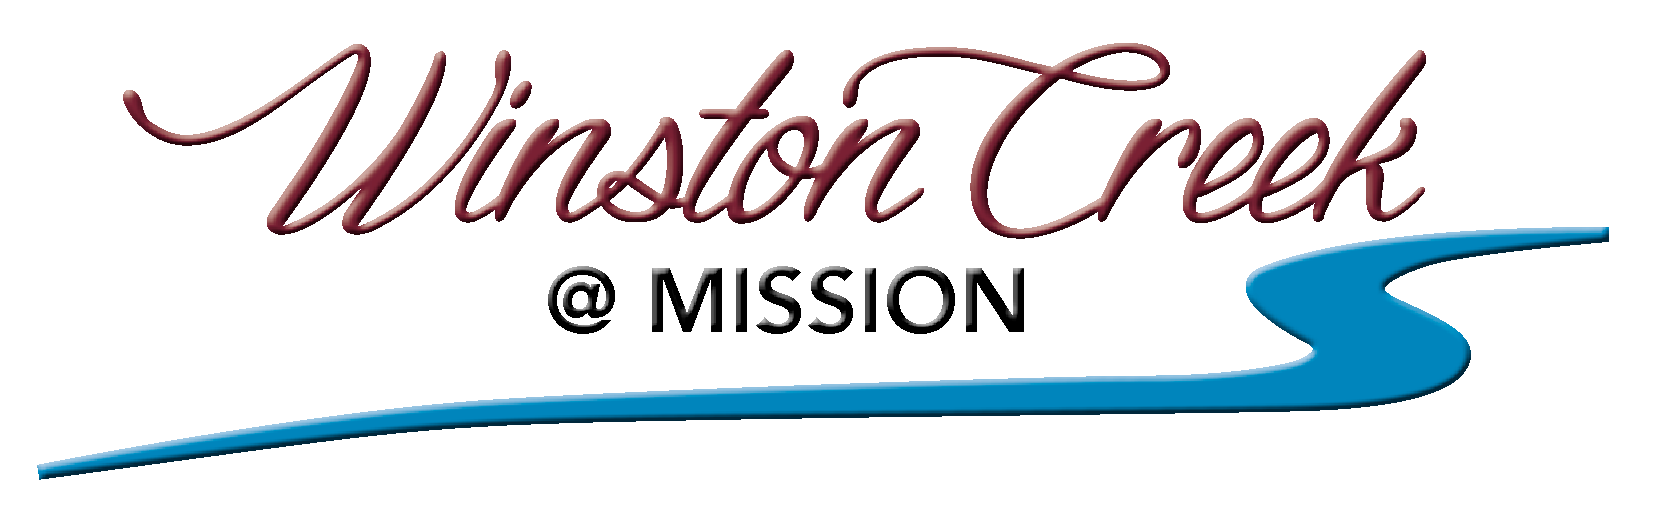 Winston Creek at Mission | Pan Cal Homes